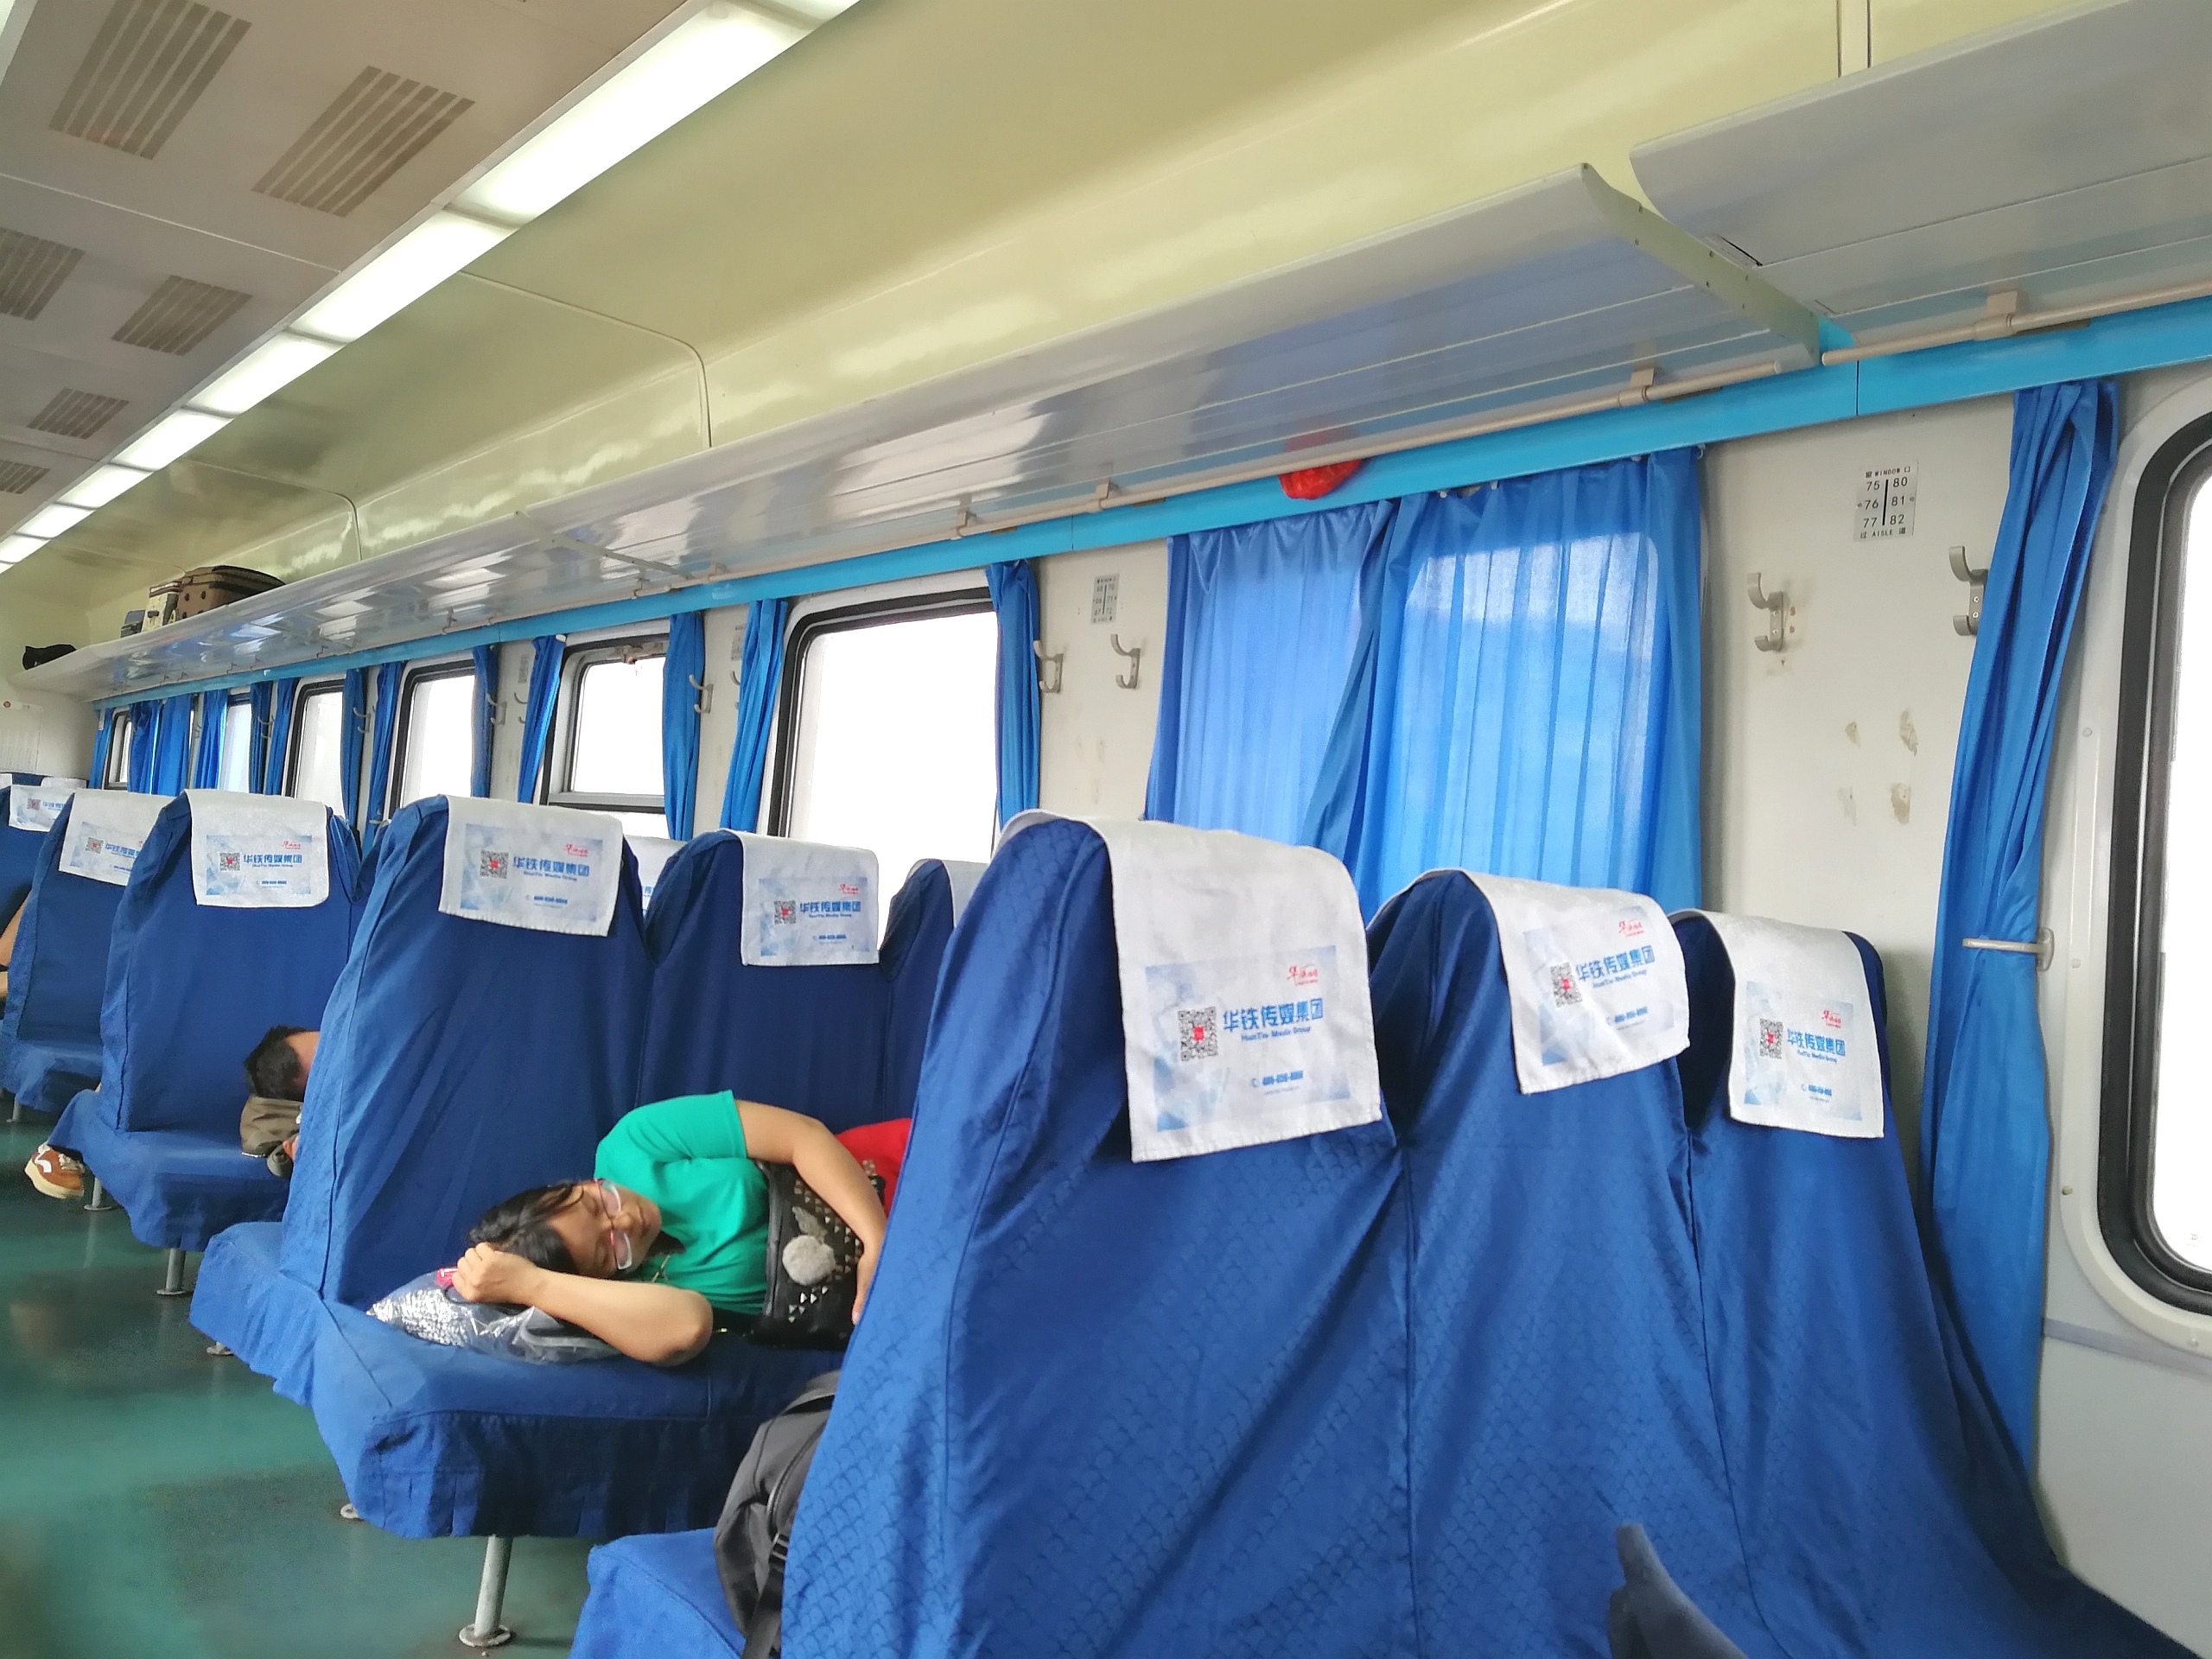 打工仔从深圳坐火车去佛山,发现车厢里很多空位,可以当成卧铺了